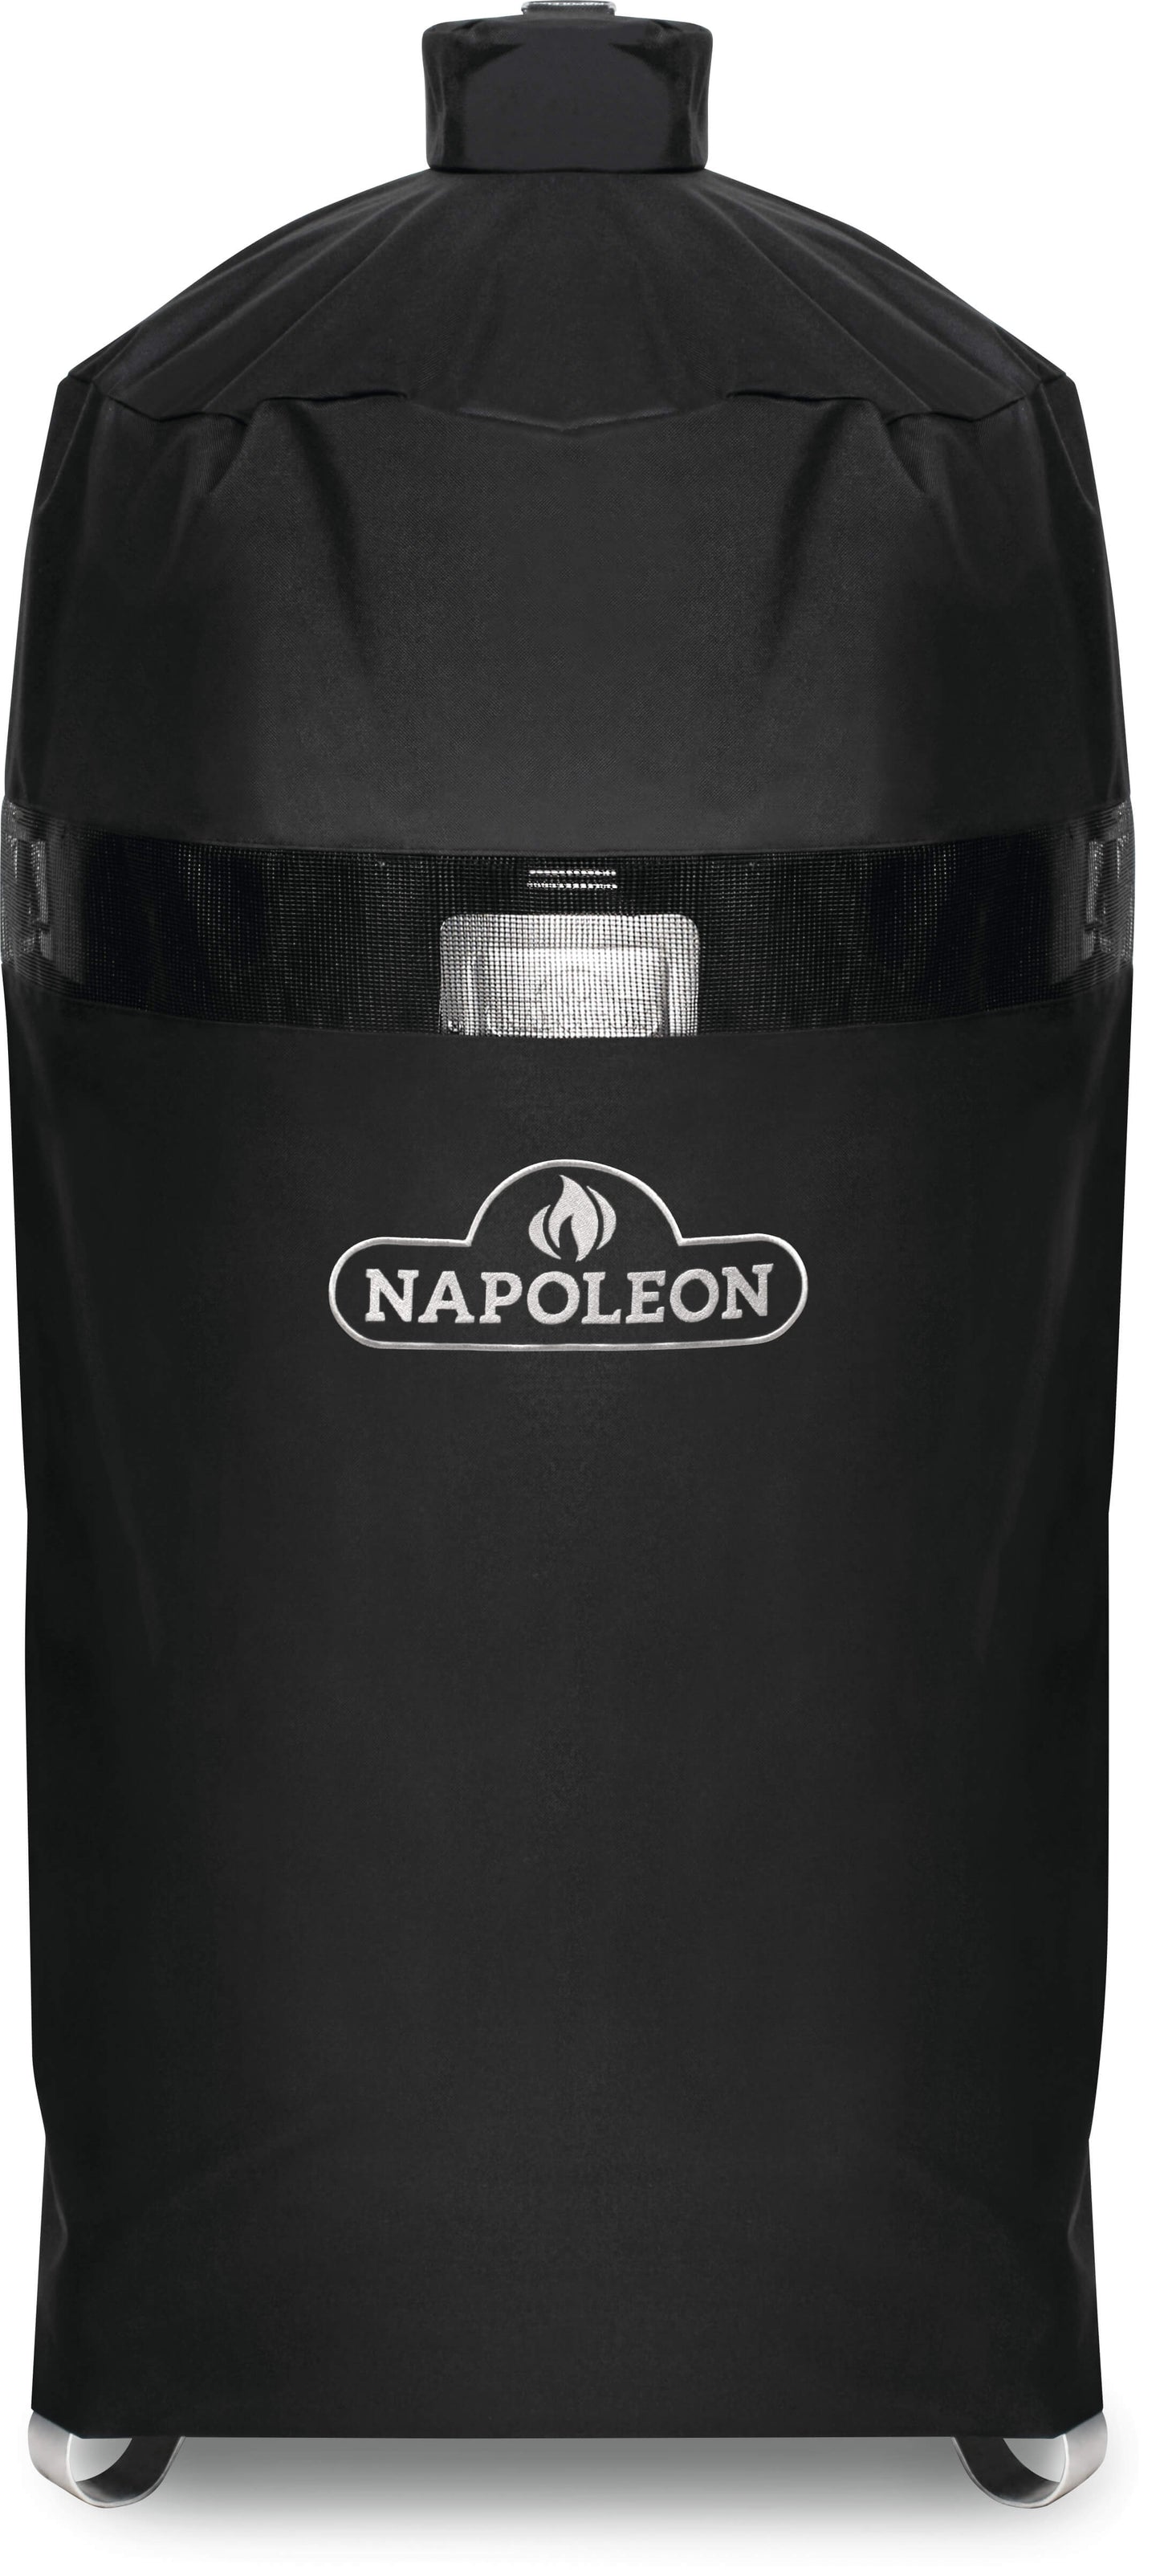 Napoleon Apollo 300 Cover